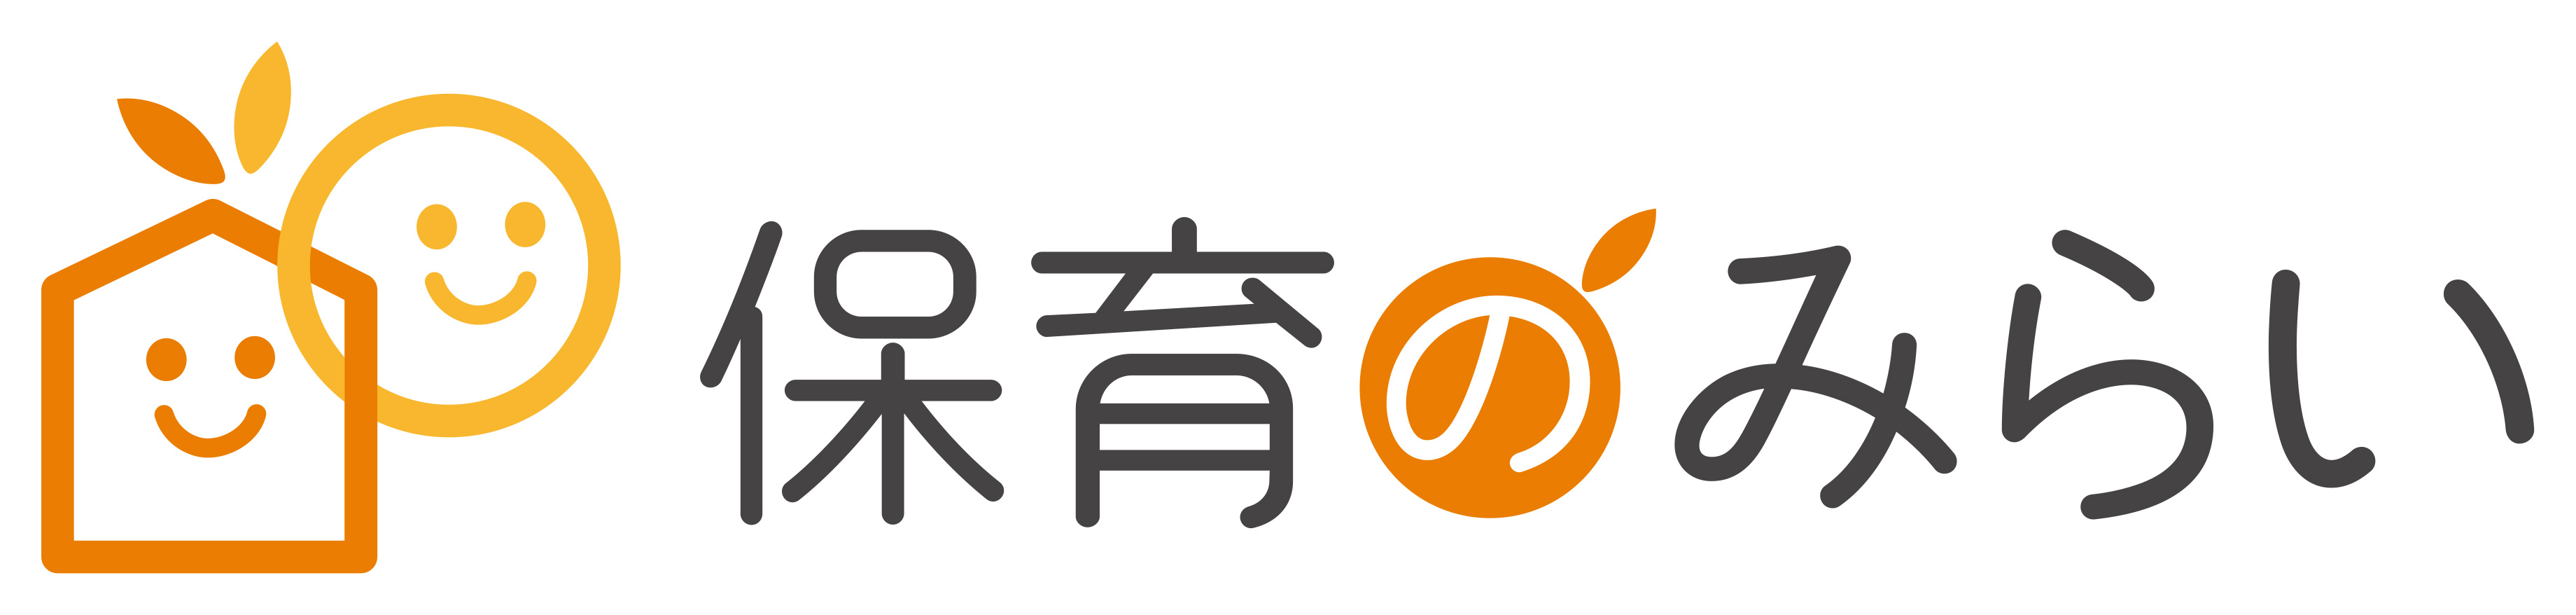 hoikunomirai_logo_2